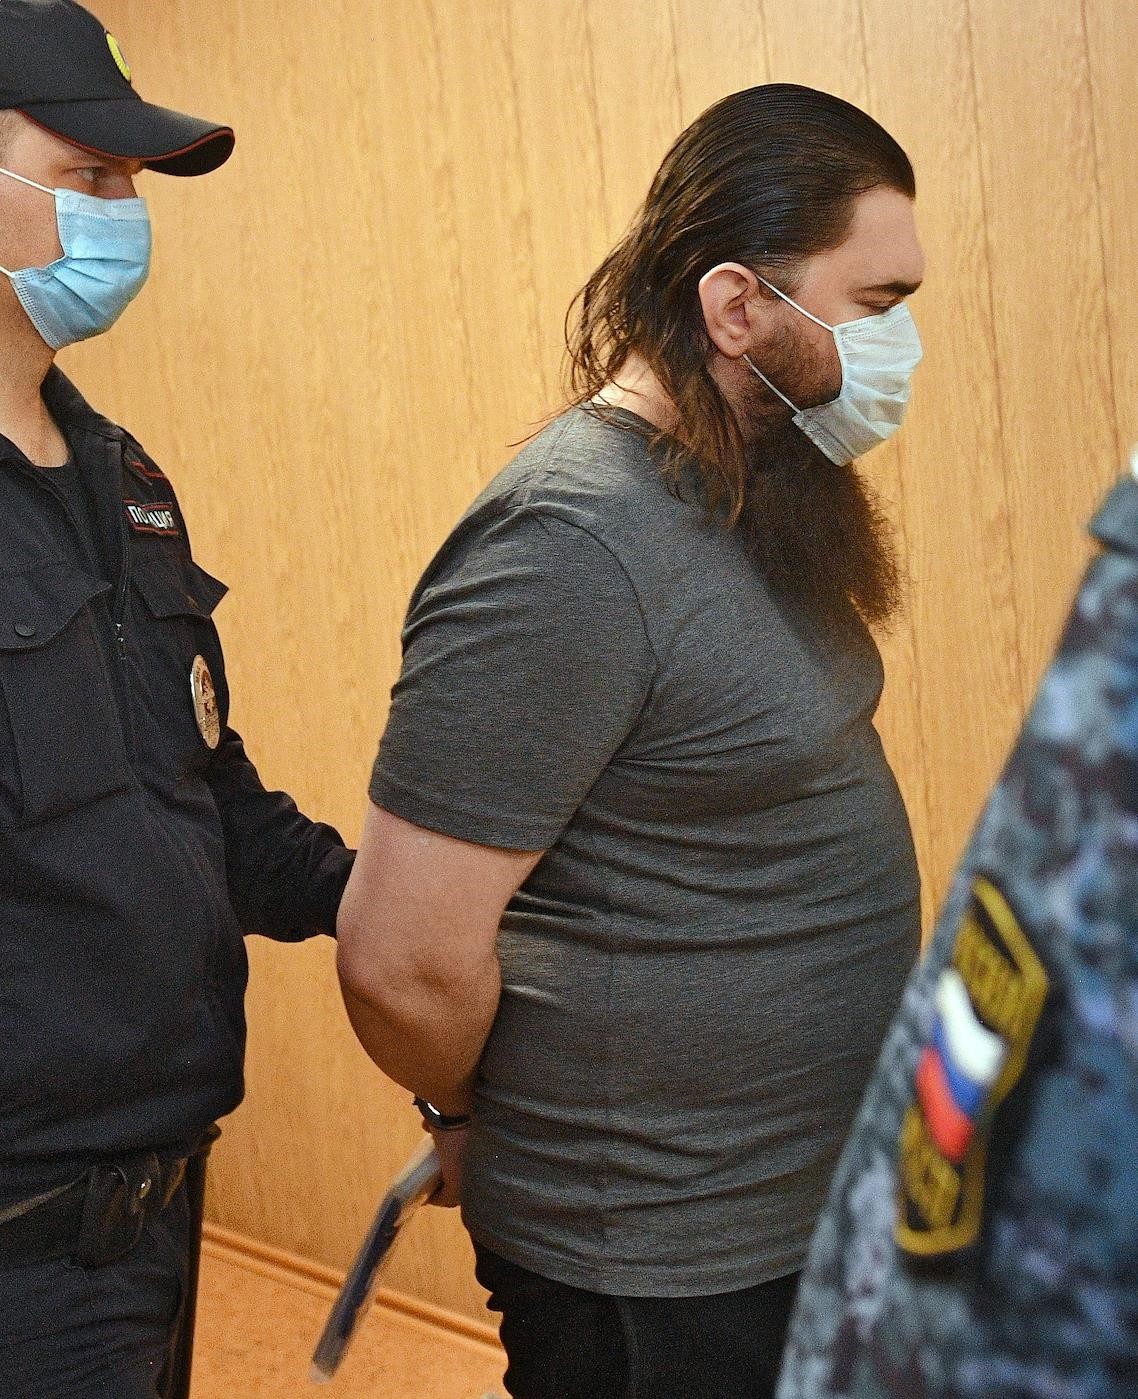 Кирилл Черкалин в суде. Фото Александр Миридонов / Коммерсантъ